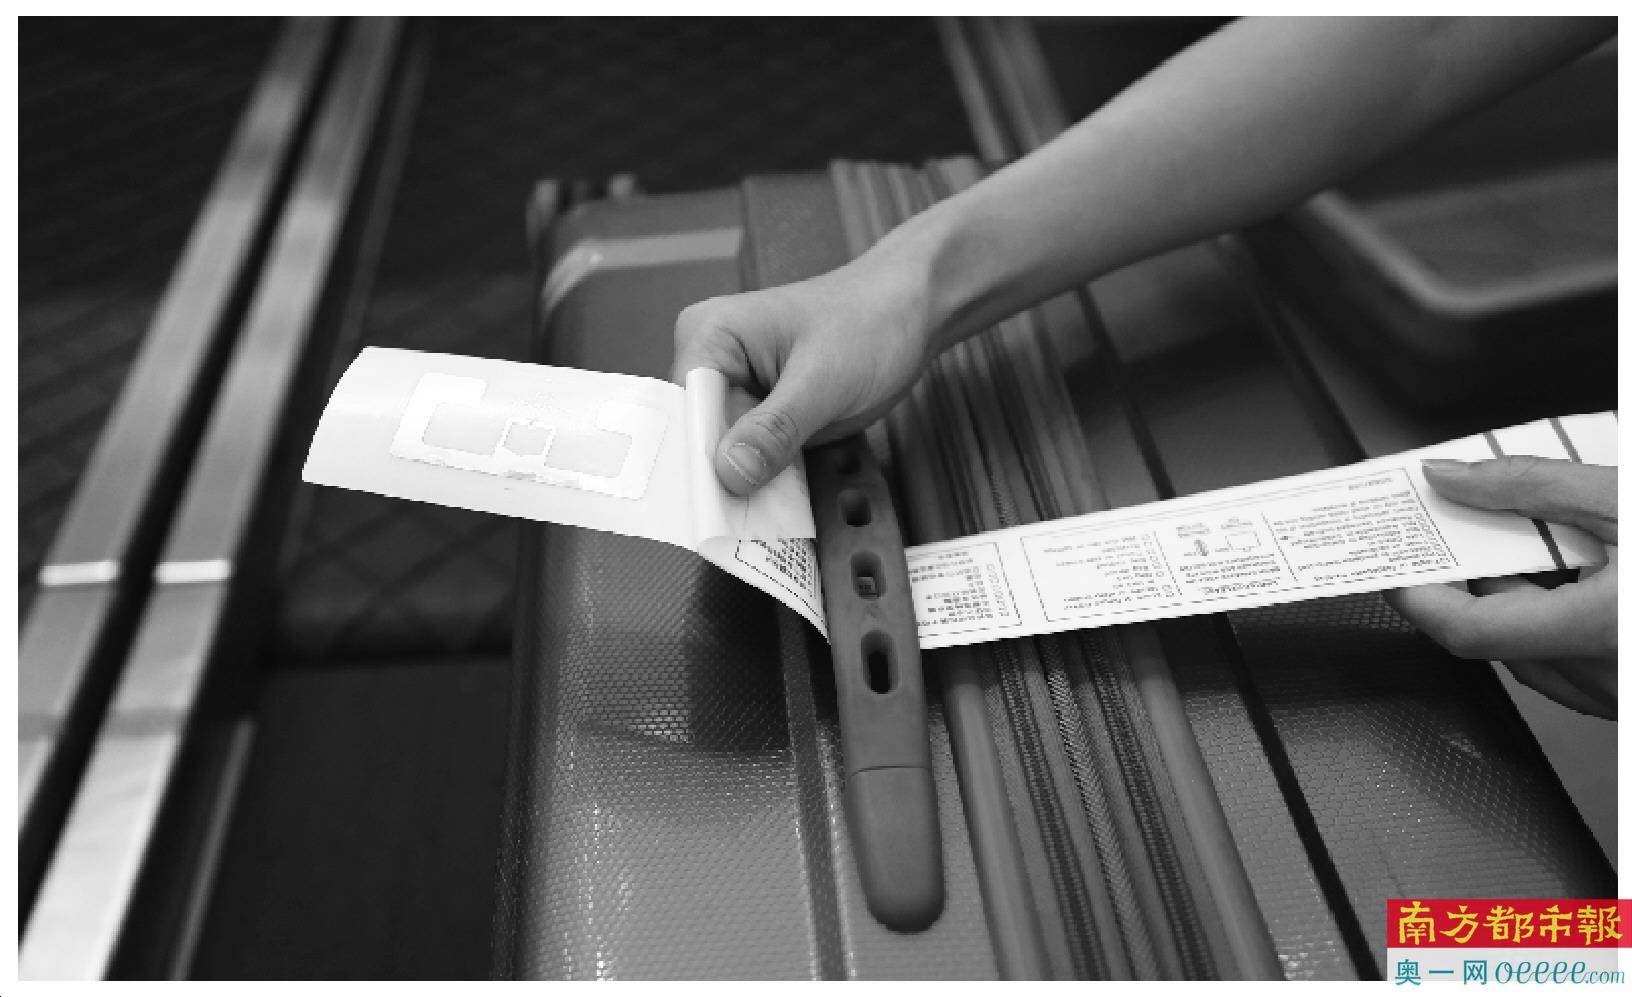 旅客通过扫描行李牌条形码,可掌握托运行李轨迹.